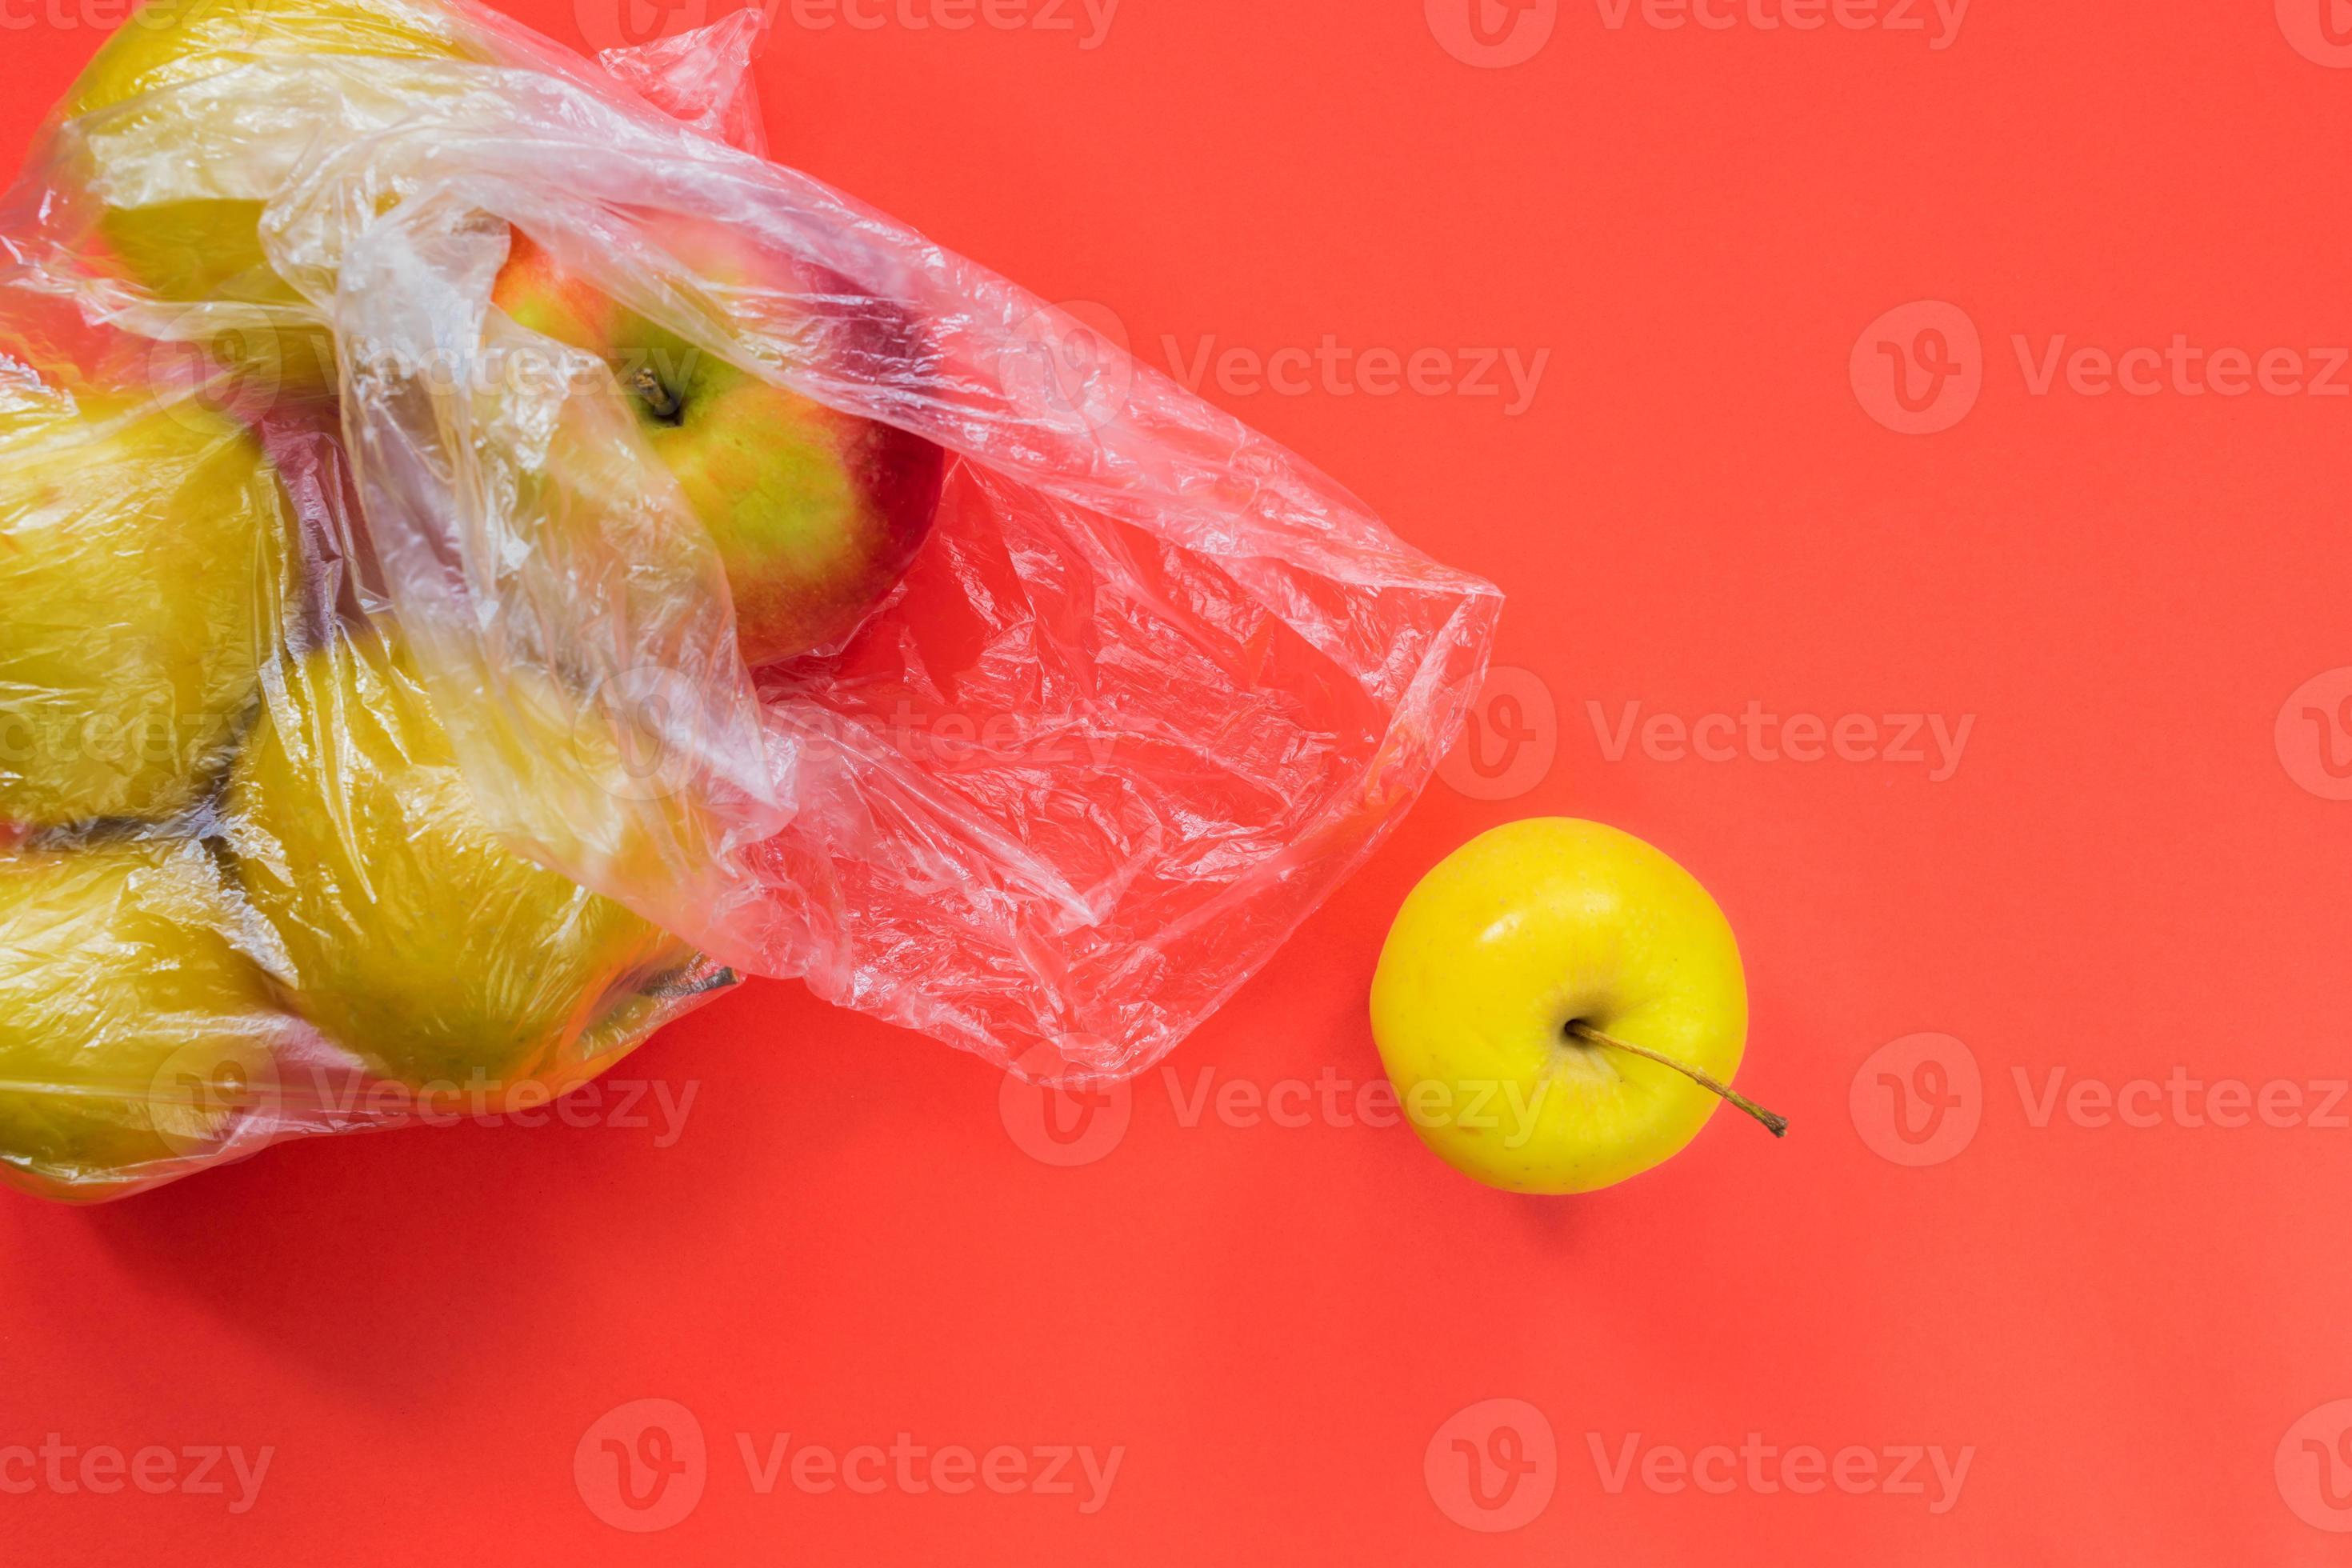 Apples (pink lady) 1kg Bag | Jesmond Fruit Barn | Shop Online